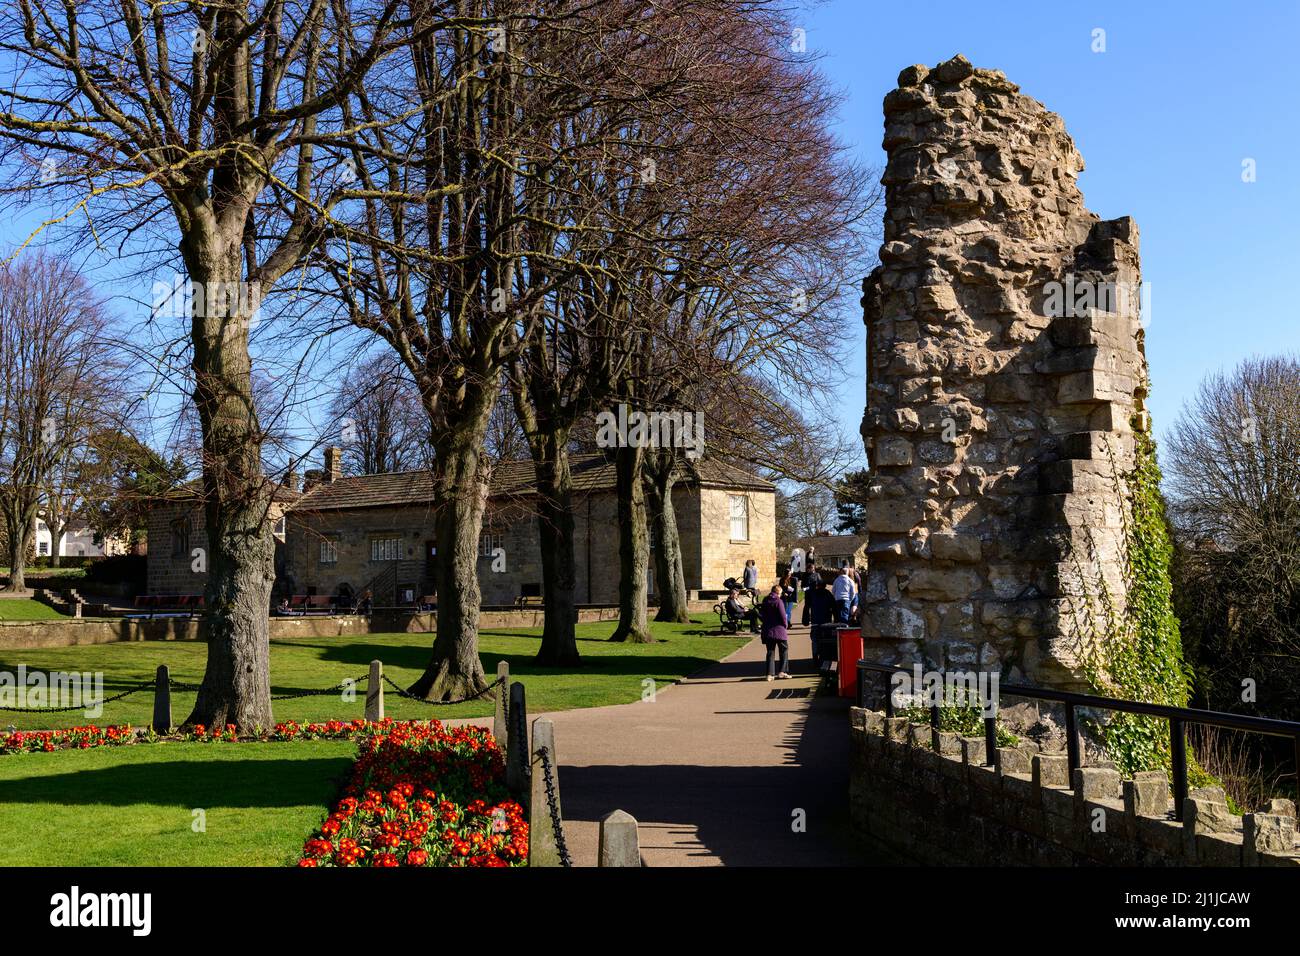 Gente que se relaja, caminando por senderos en el soleado parque (flores de la frontera brillante, ruinas antiguas, cielo azul) - Castillo de Knaresborough, North Yorkshire, Inglaterra, Reino Unido. Foto de stock